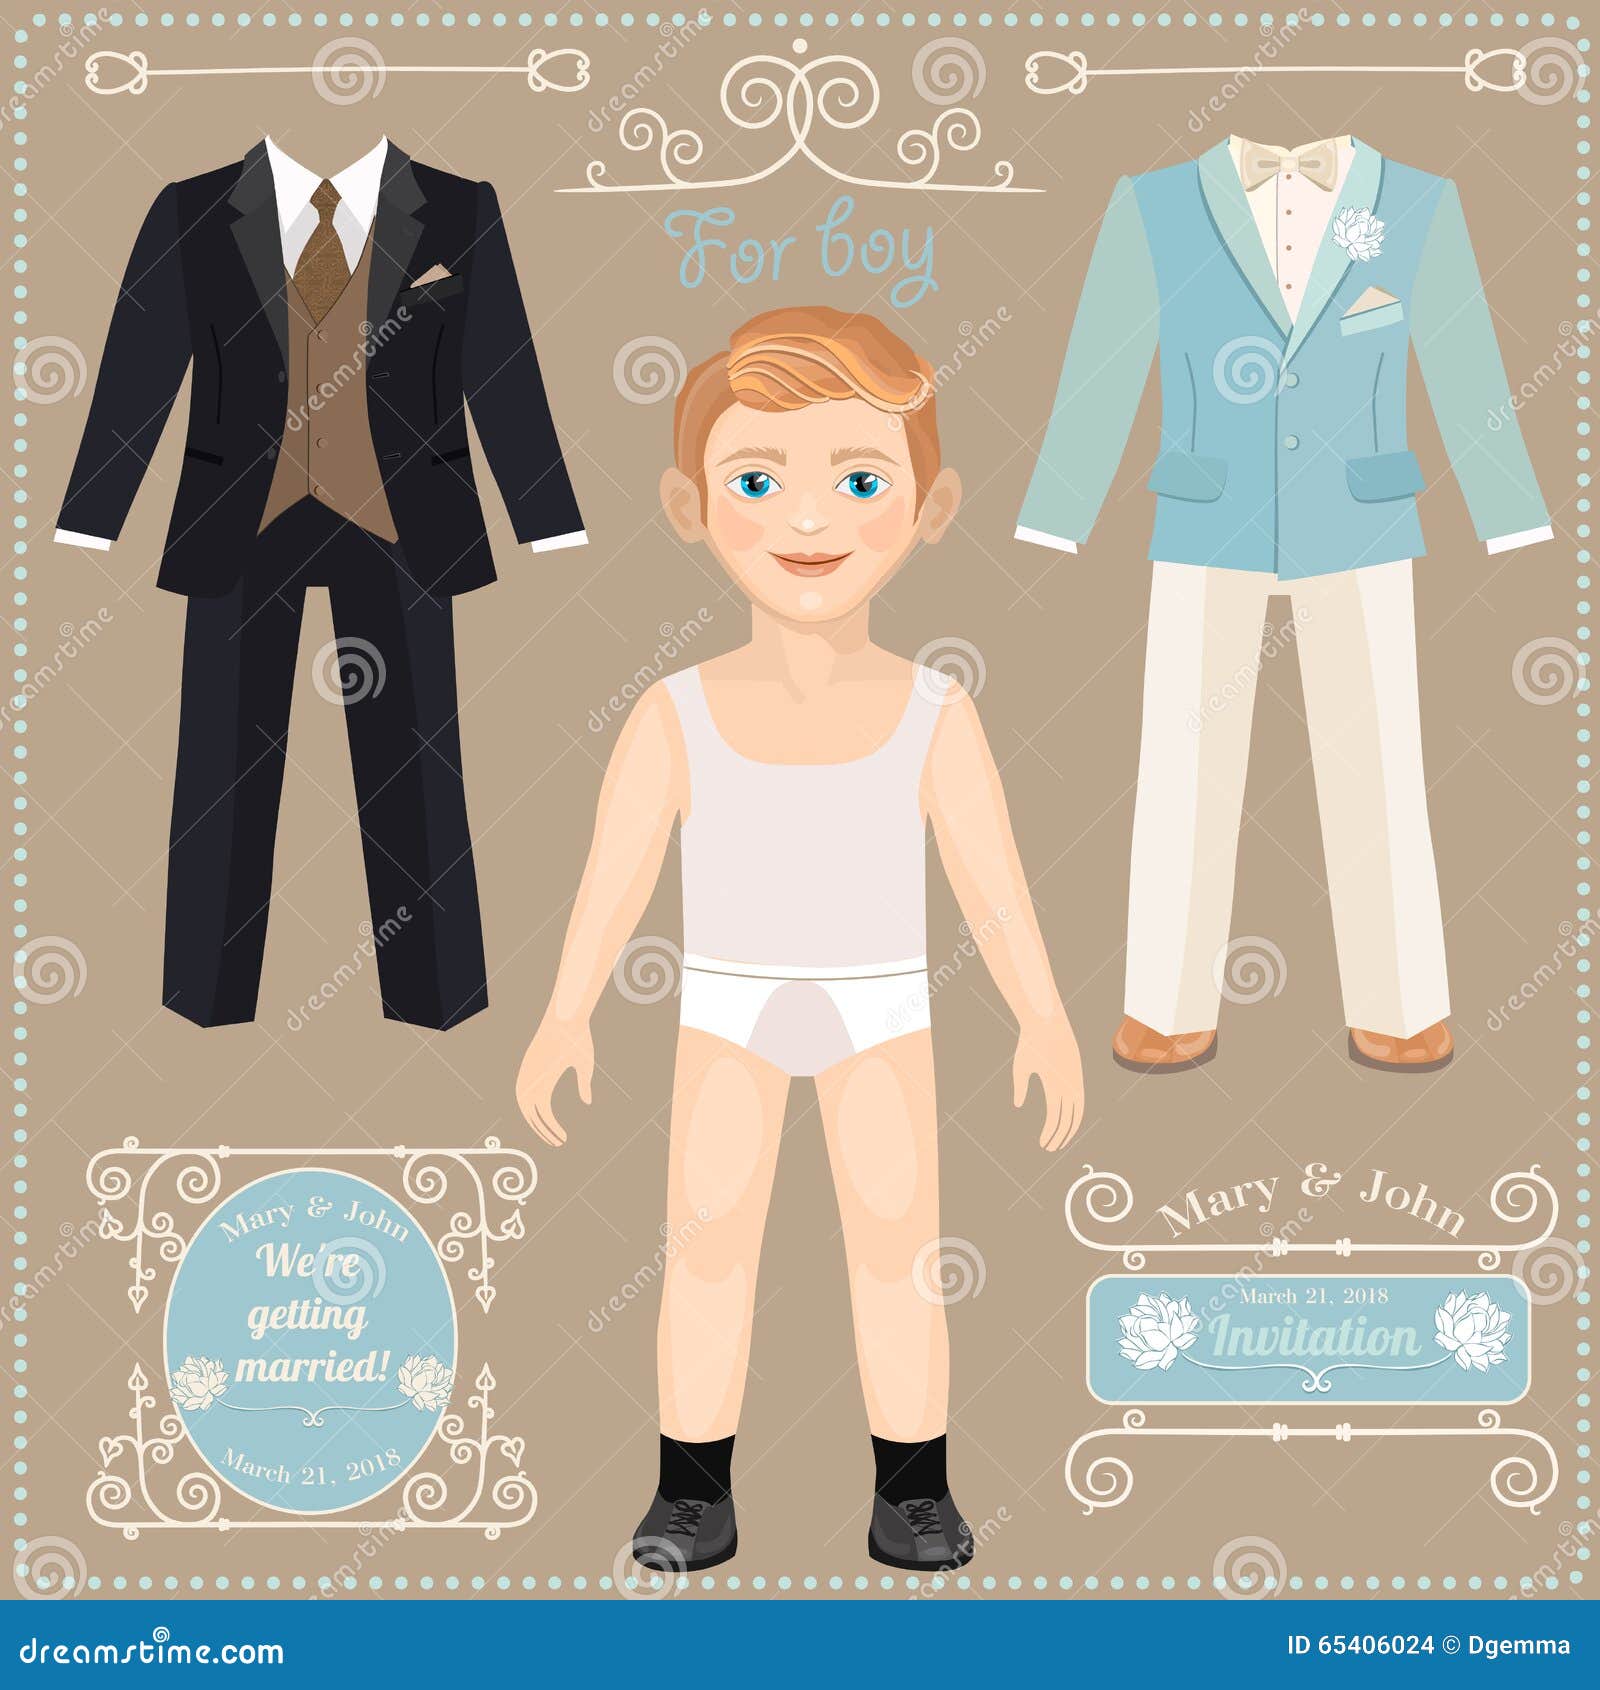 Бумажная школа персонажи. Бумажная кукла мальчик с одеждой. Куклы мальчики из бумаги с одеждой. Школьная одежда для бумажных кукол. Одежда для бумажных кукол Школьная форма.